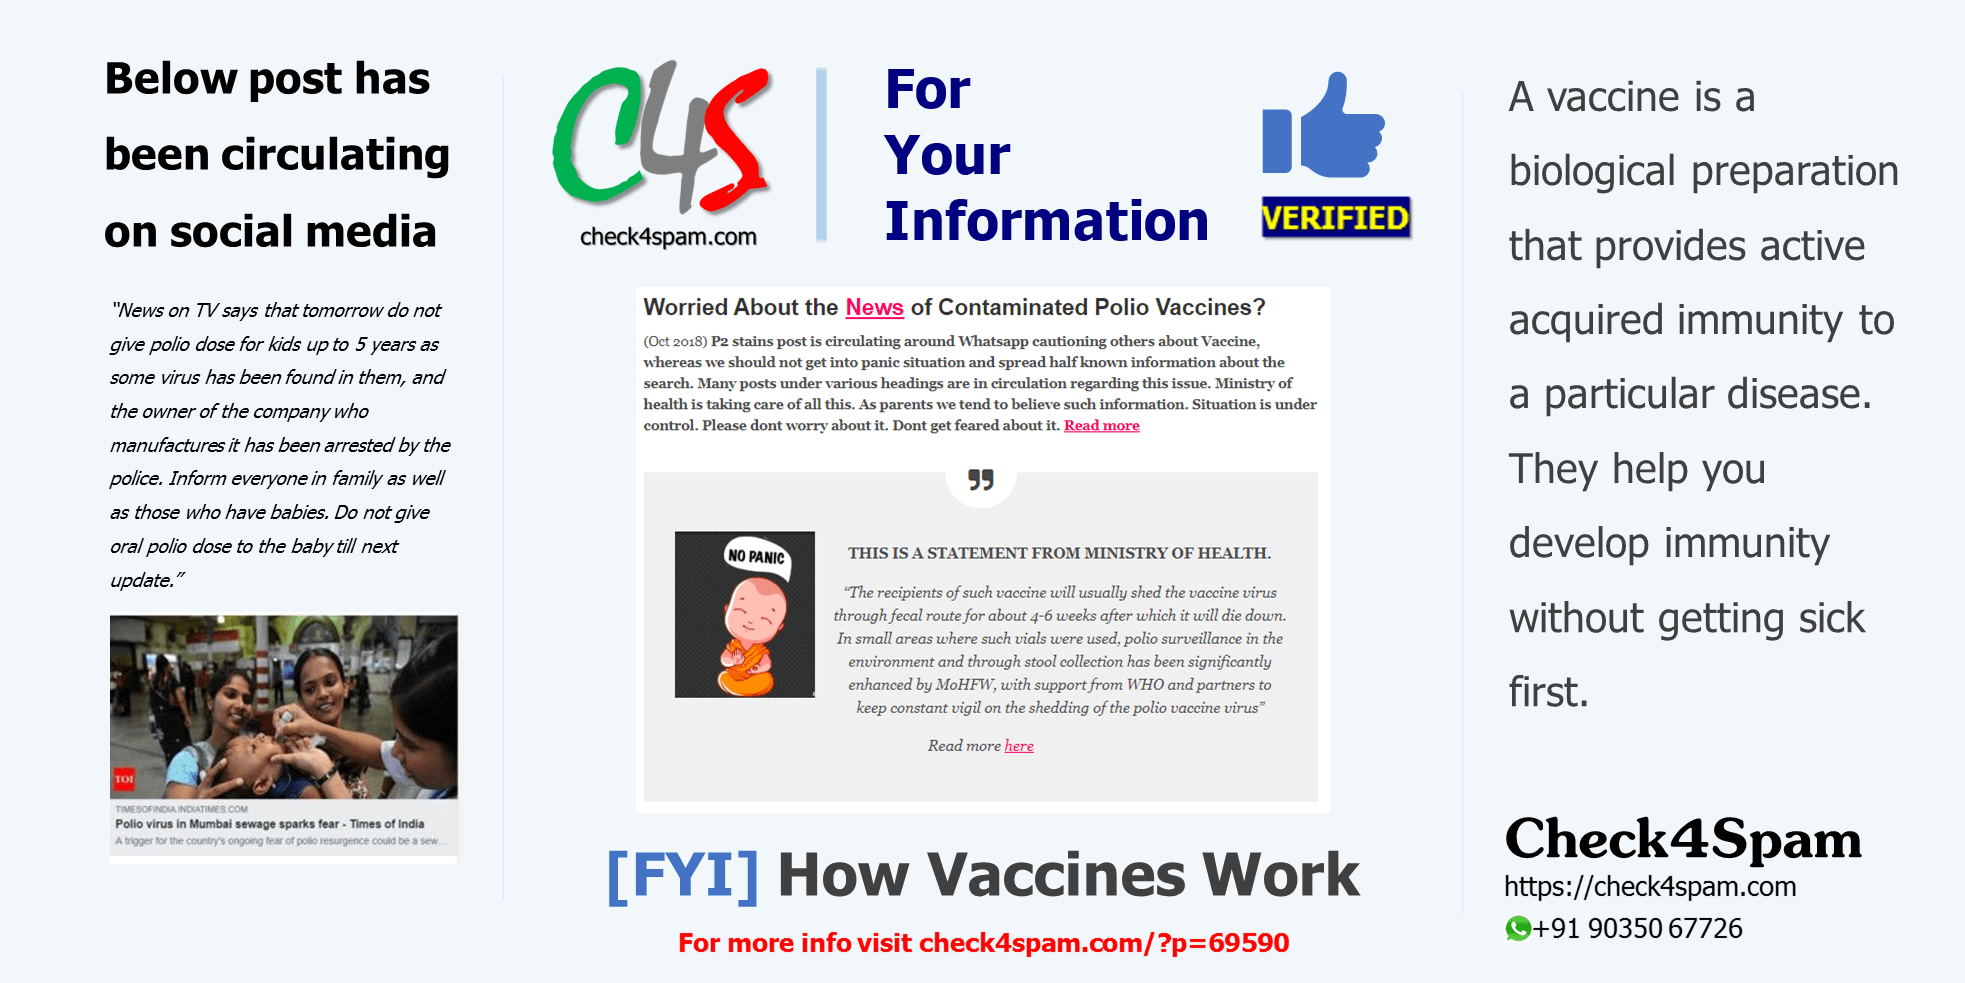 [FYI] How Vaccines Work